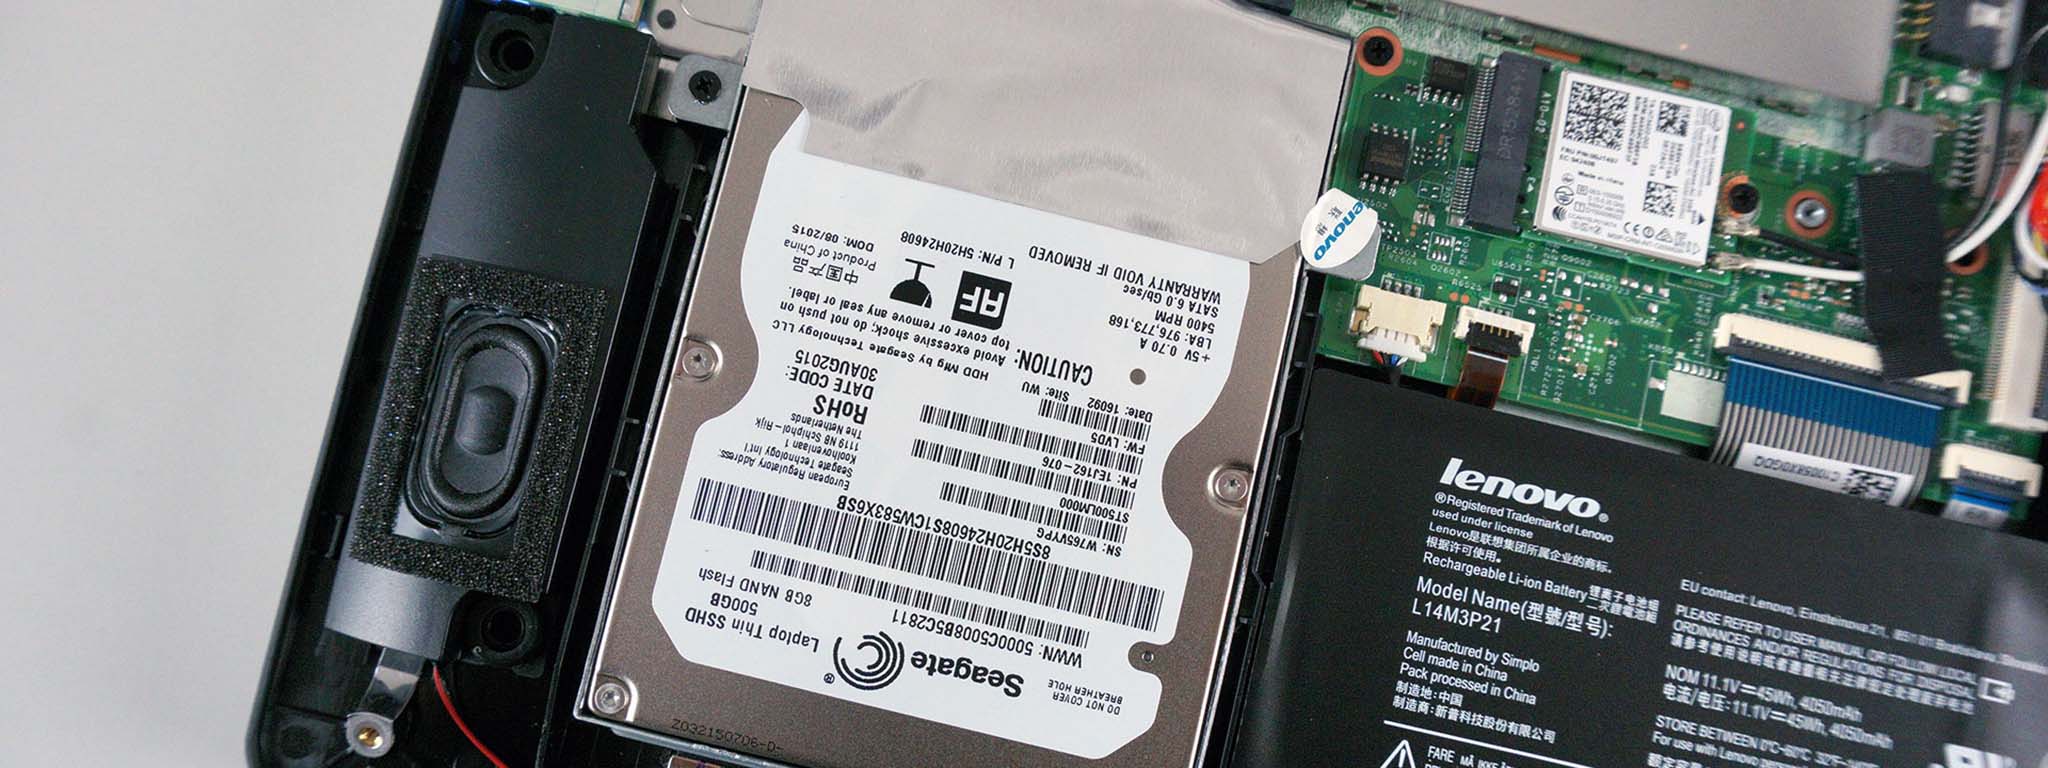 Chiếc ổ cứng HDD sẽ có dung lượng tối đa vượt mức 30TB chuẩn bị được Toshiba cho ra mắt